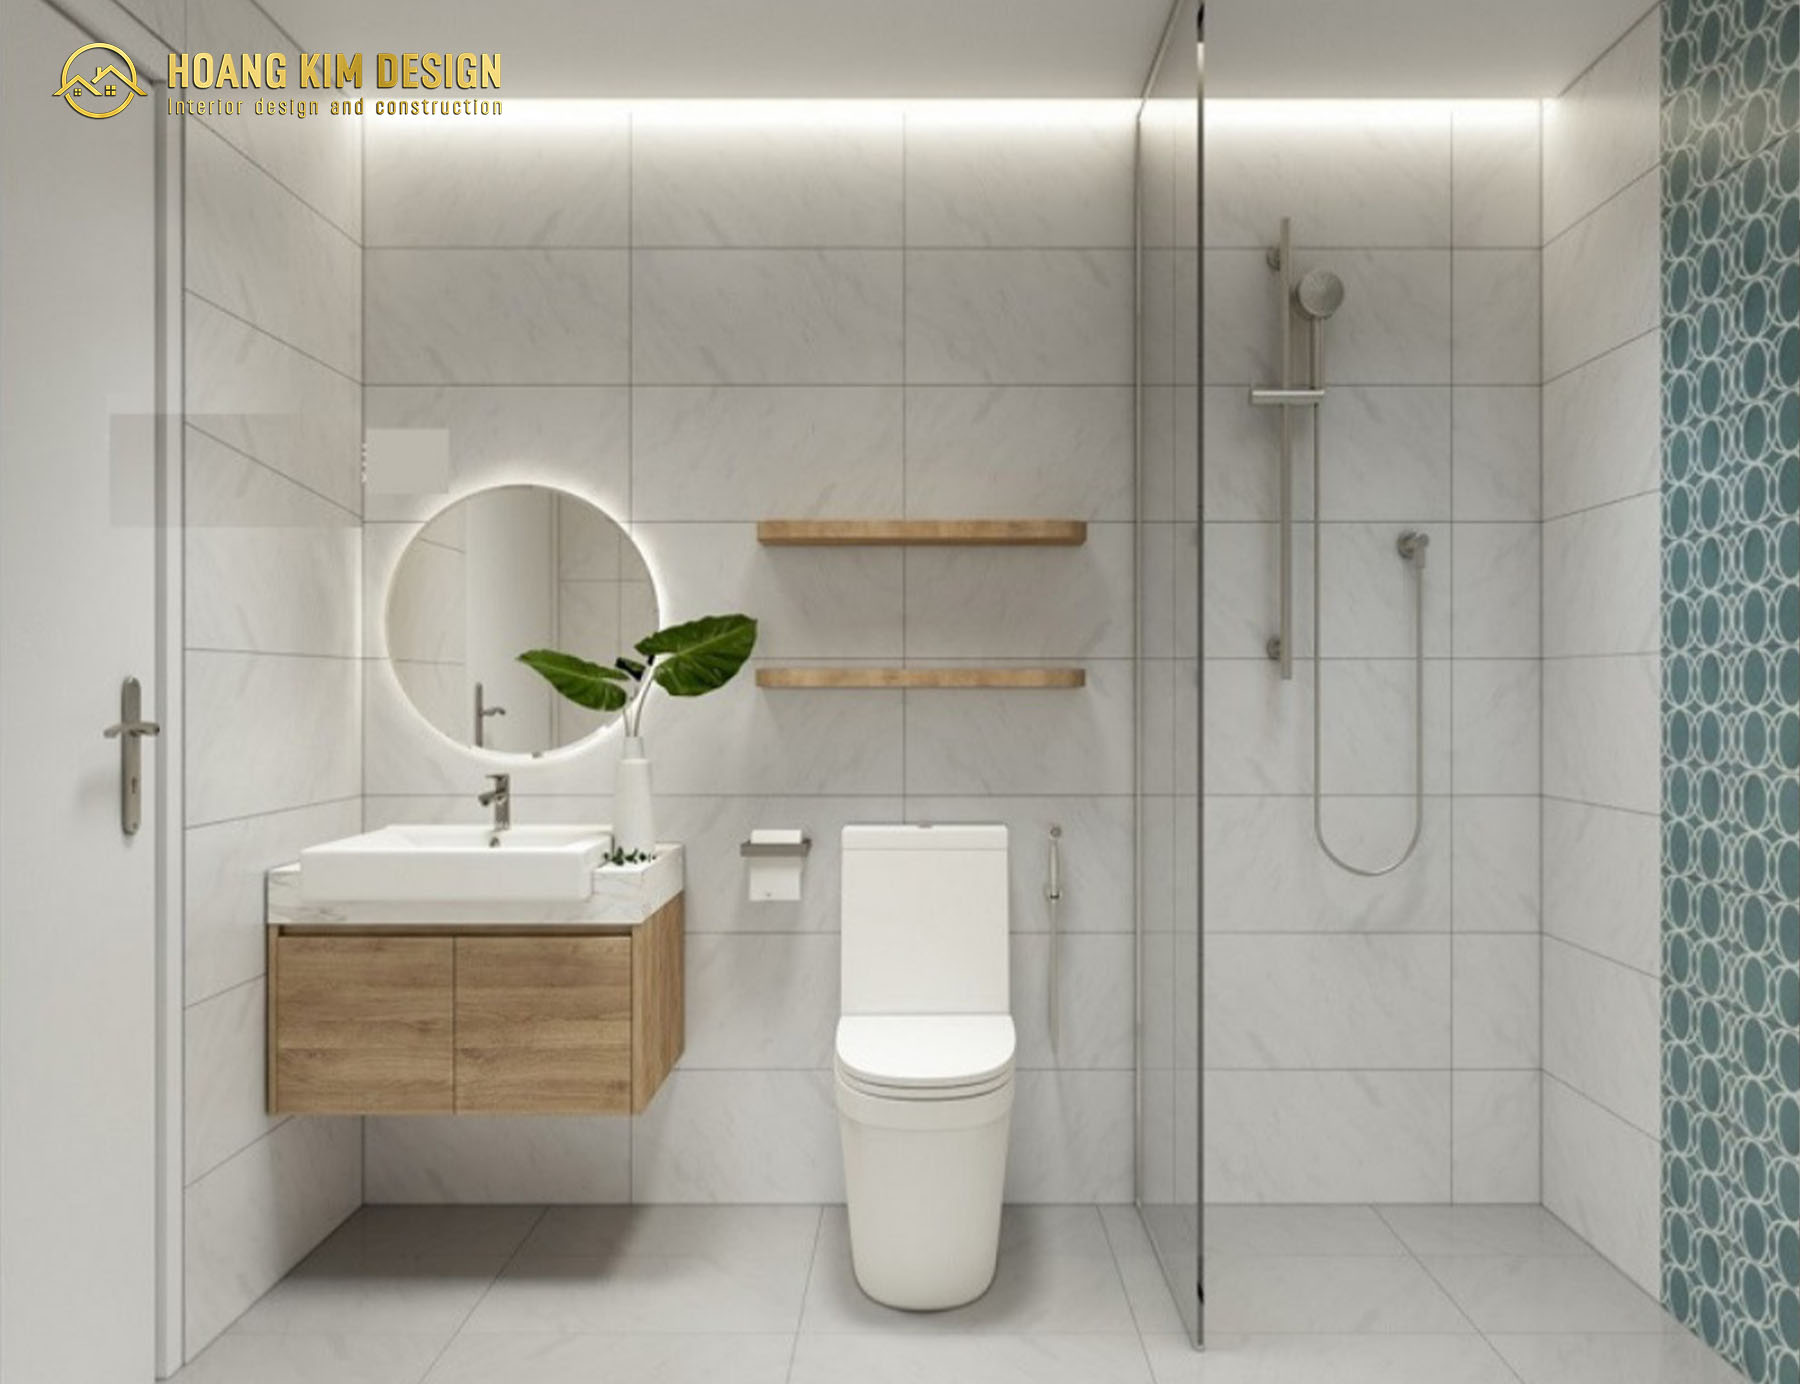 Không gian phòng tắm cũng cần những nội thất đa năng mà vẫn đảm bảo thiết kế đơn giản